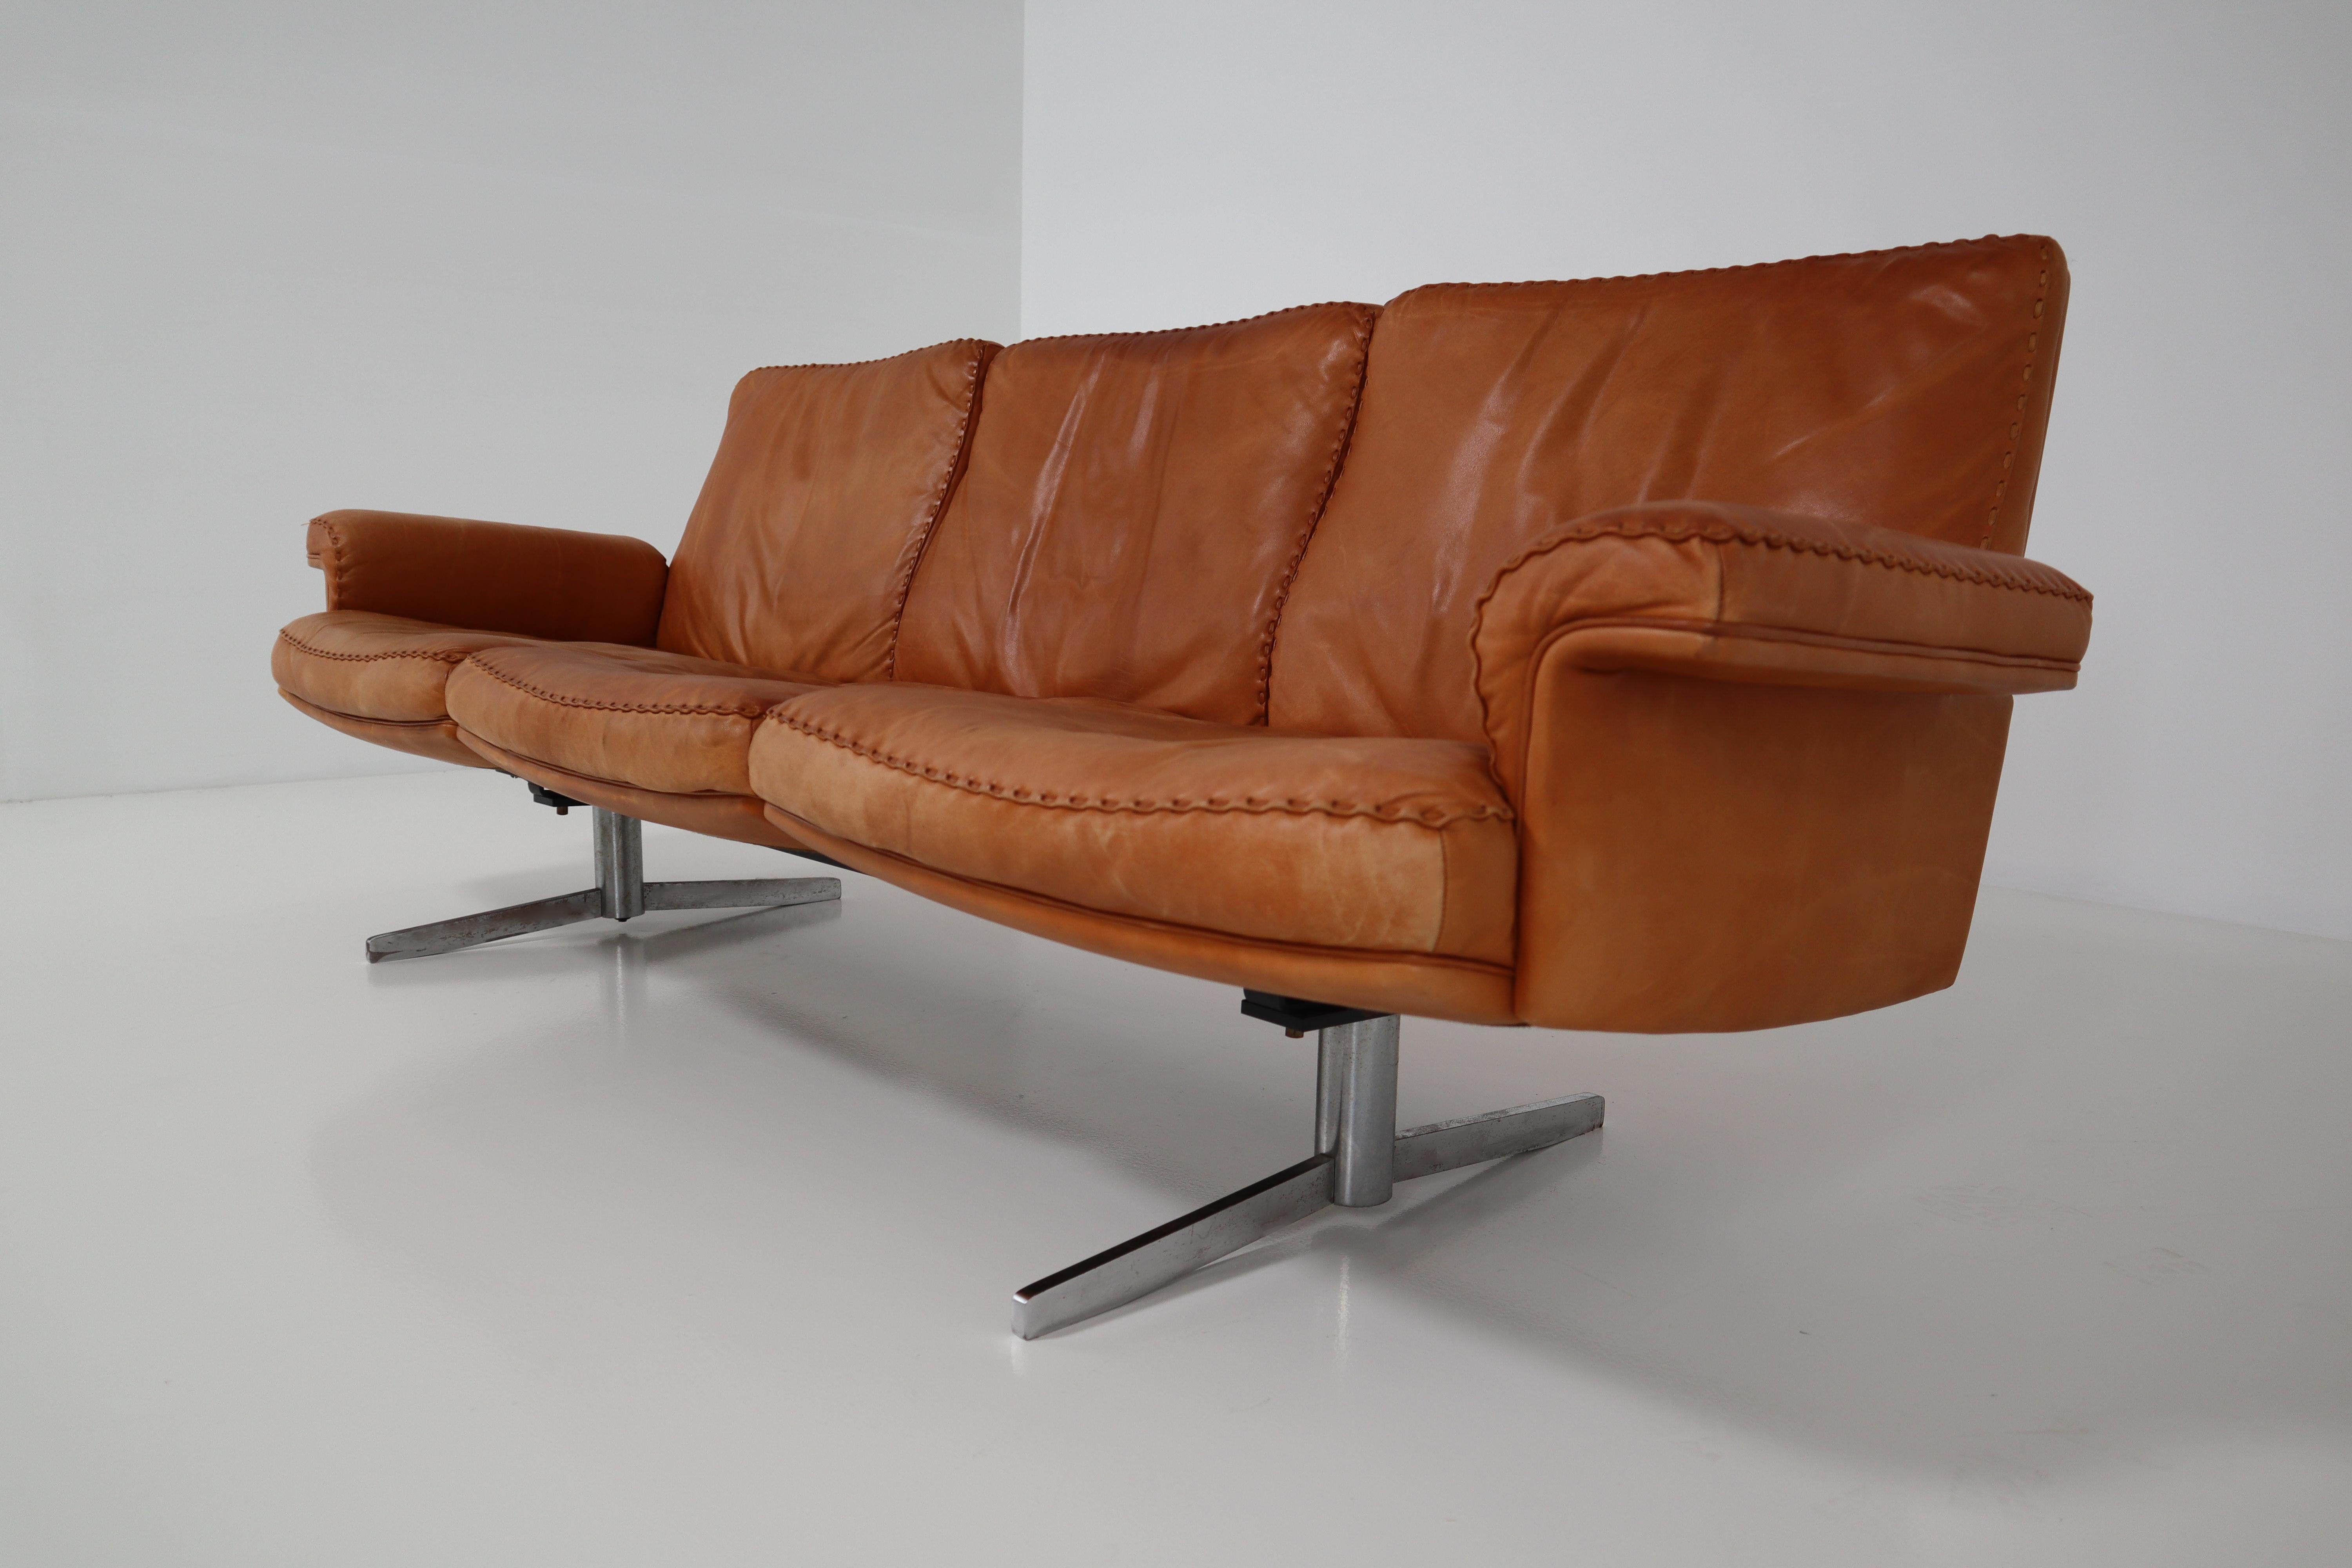 Mid-20th Century De Sede Three-Seat Sofa in Soft Ailine Cognac Leather, Model DS 35